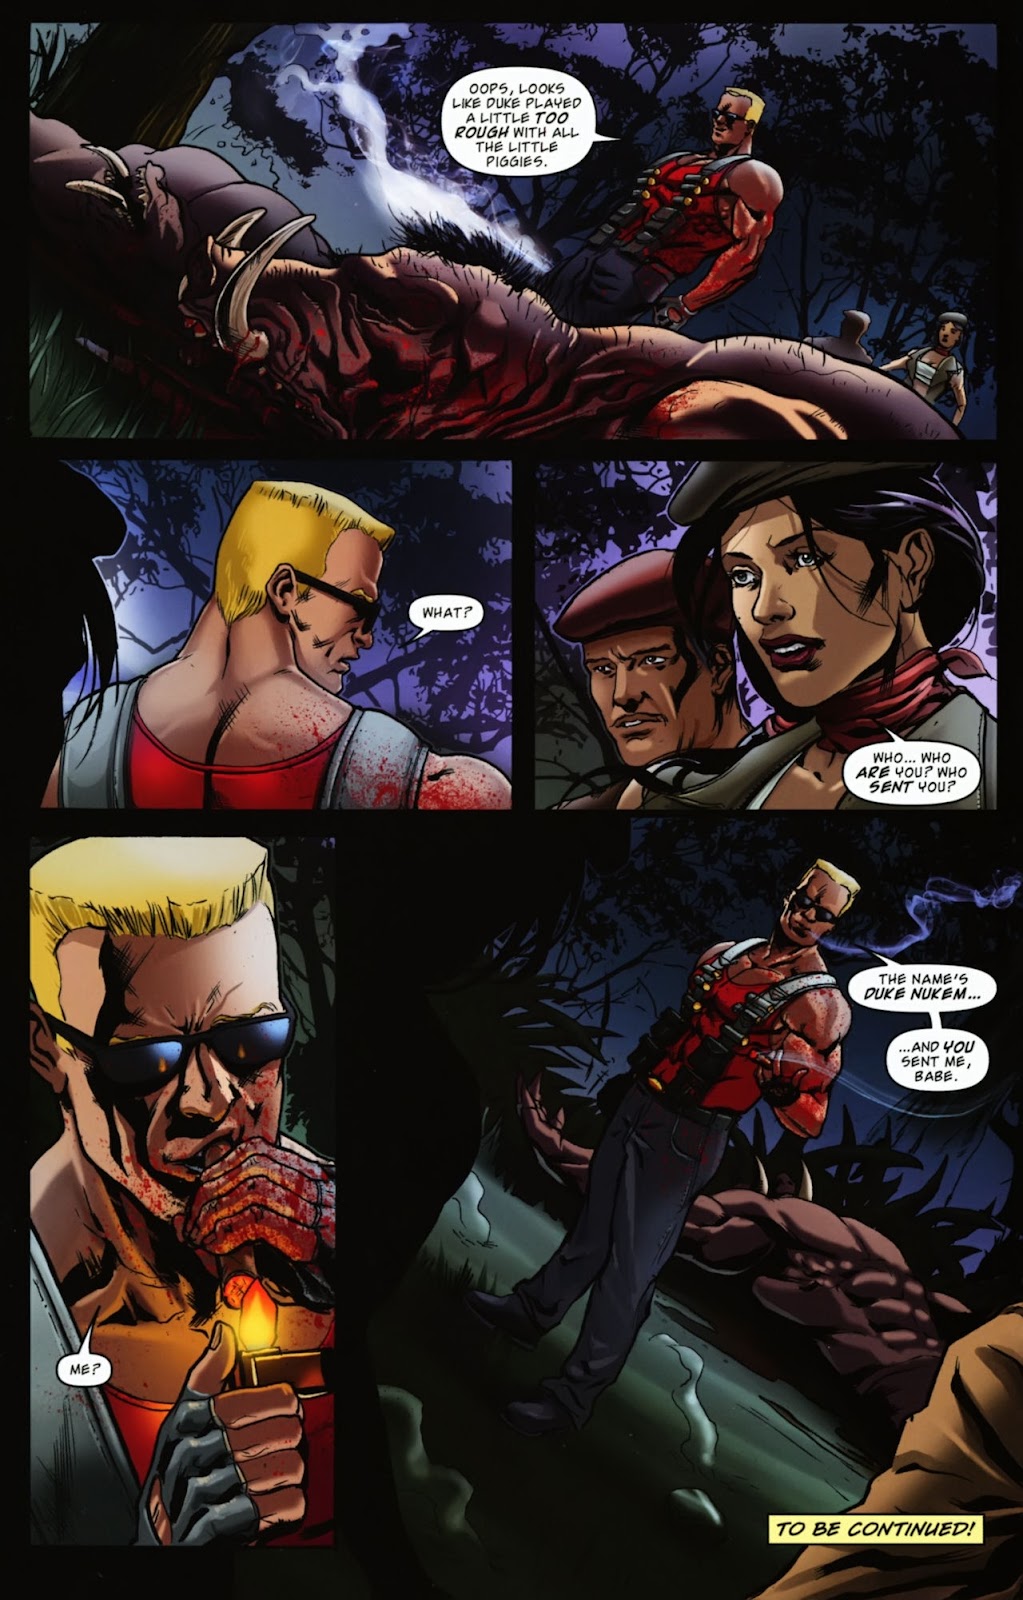 Duke Nukem: Glorious Bastard issue 1 - Page 26